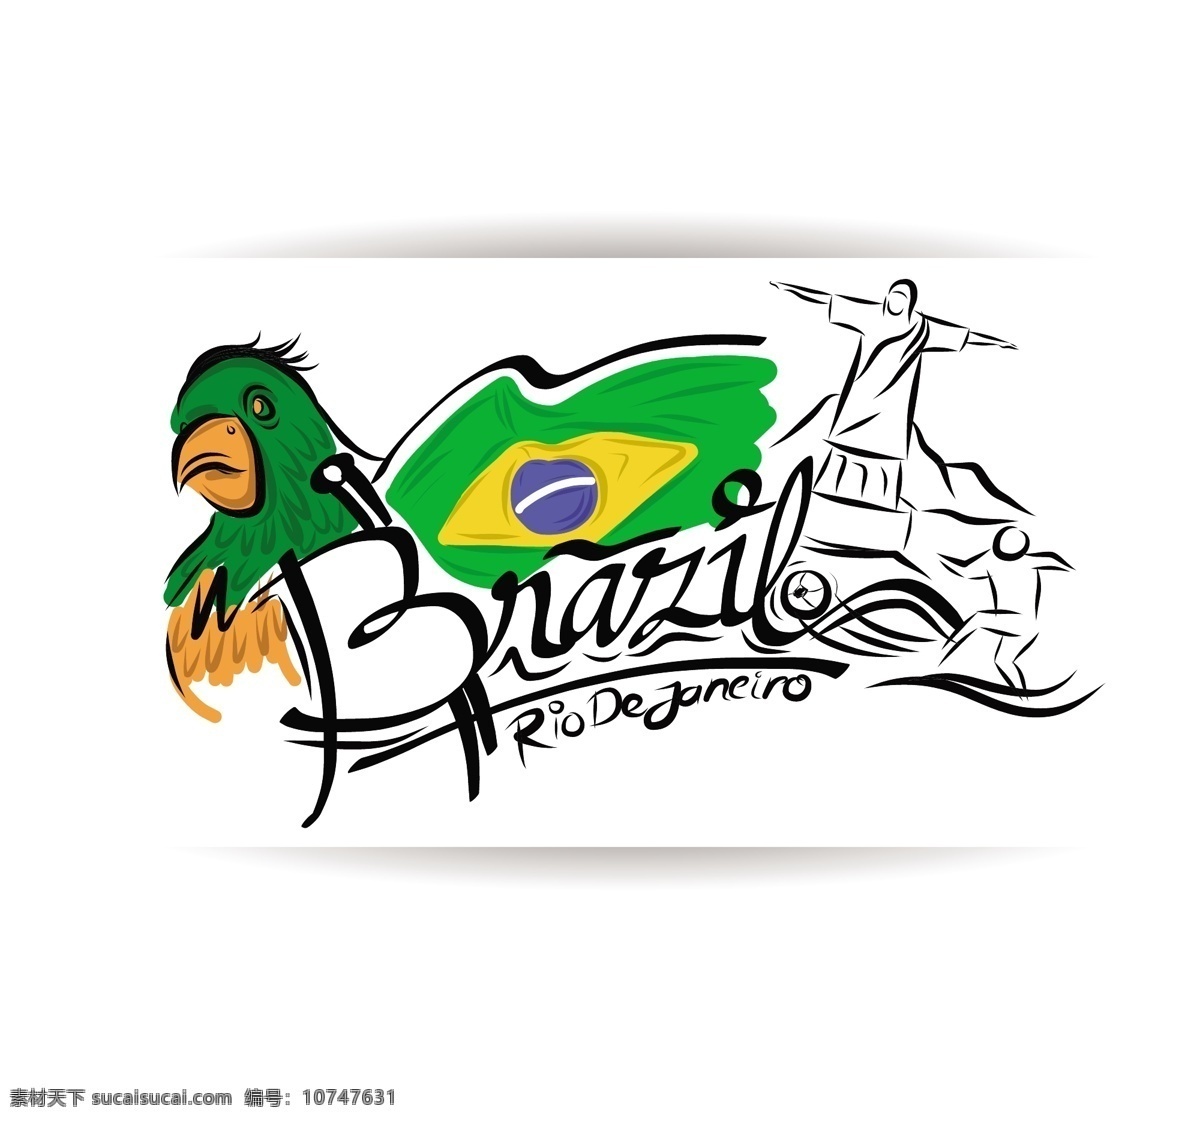 巴西 足球 世界杯 标志 模板下载 卡通鹦鹉 基督像 卡通鸟 巴西国旗 足球比赛 球赛 体育运动 生活百科 矢量素材 白色